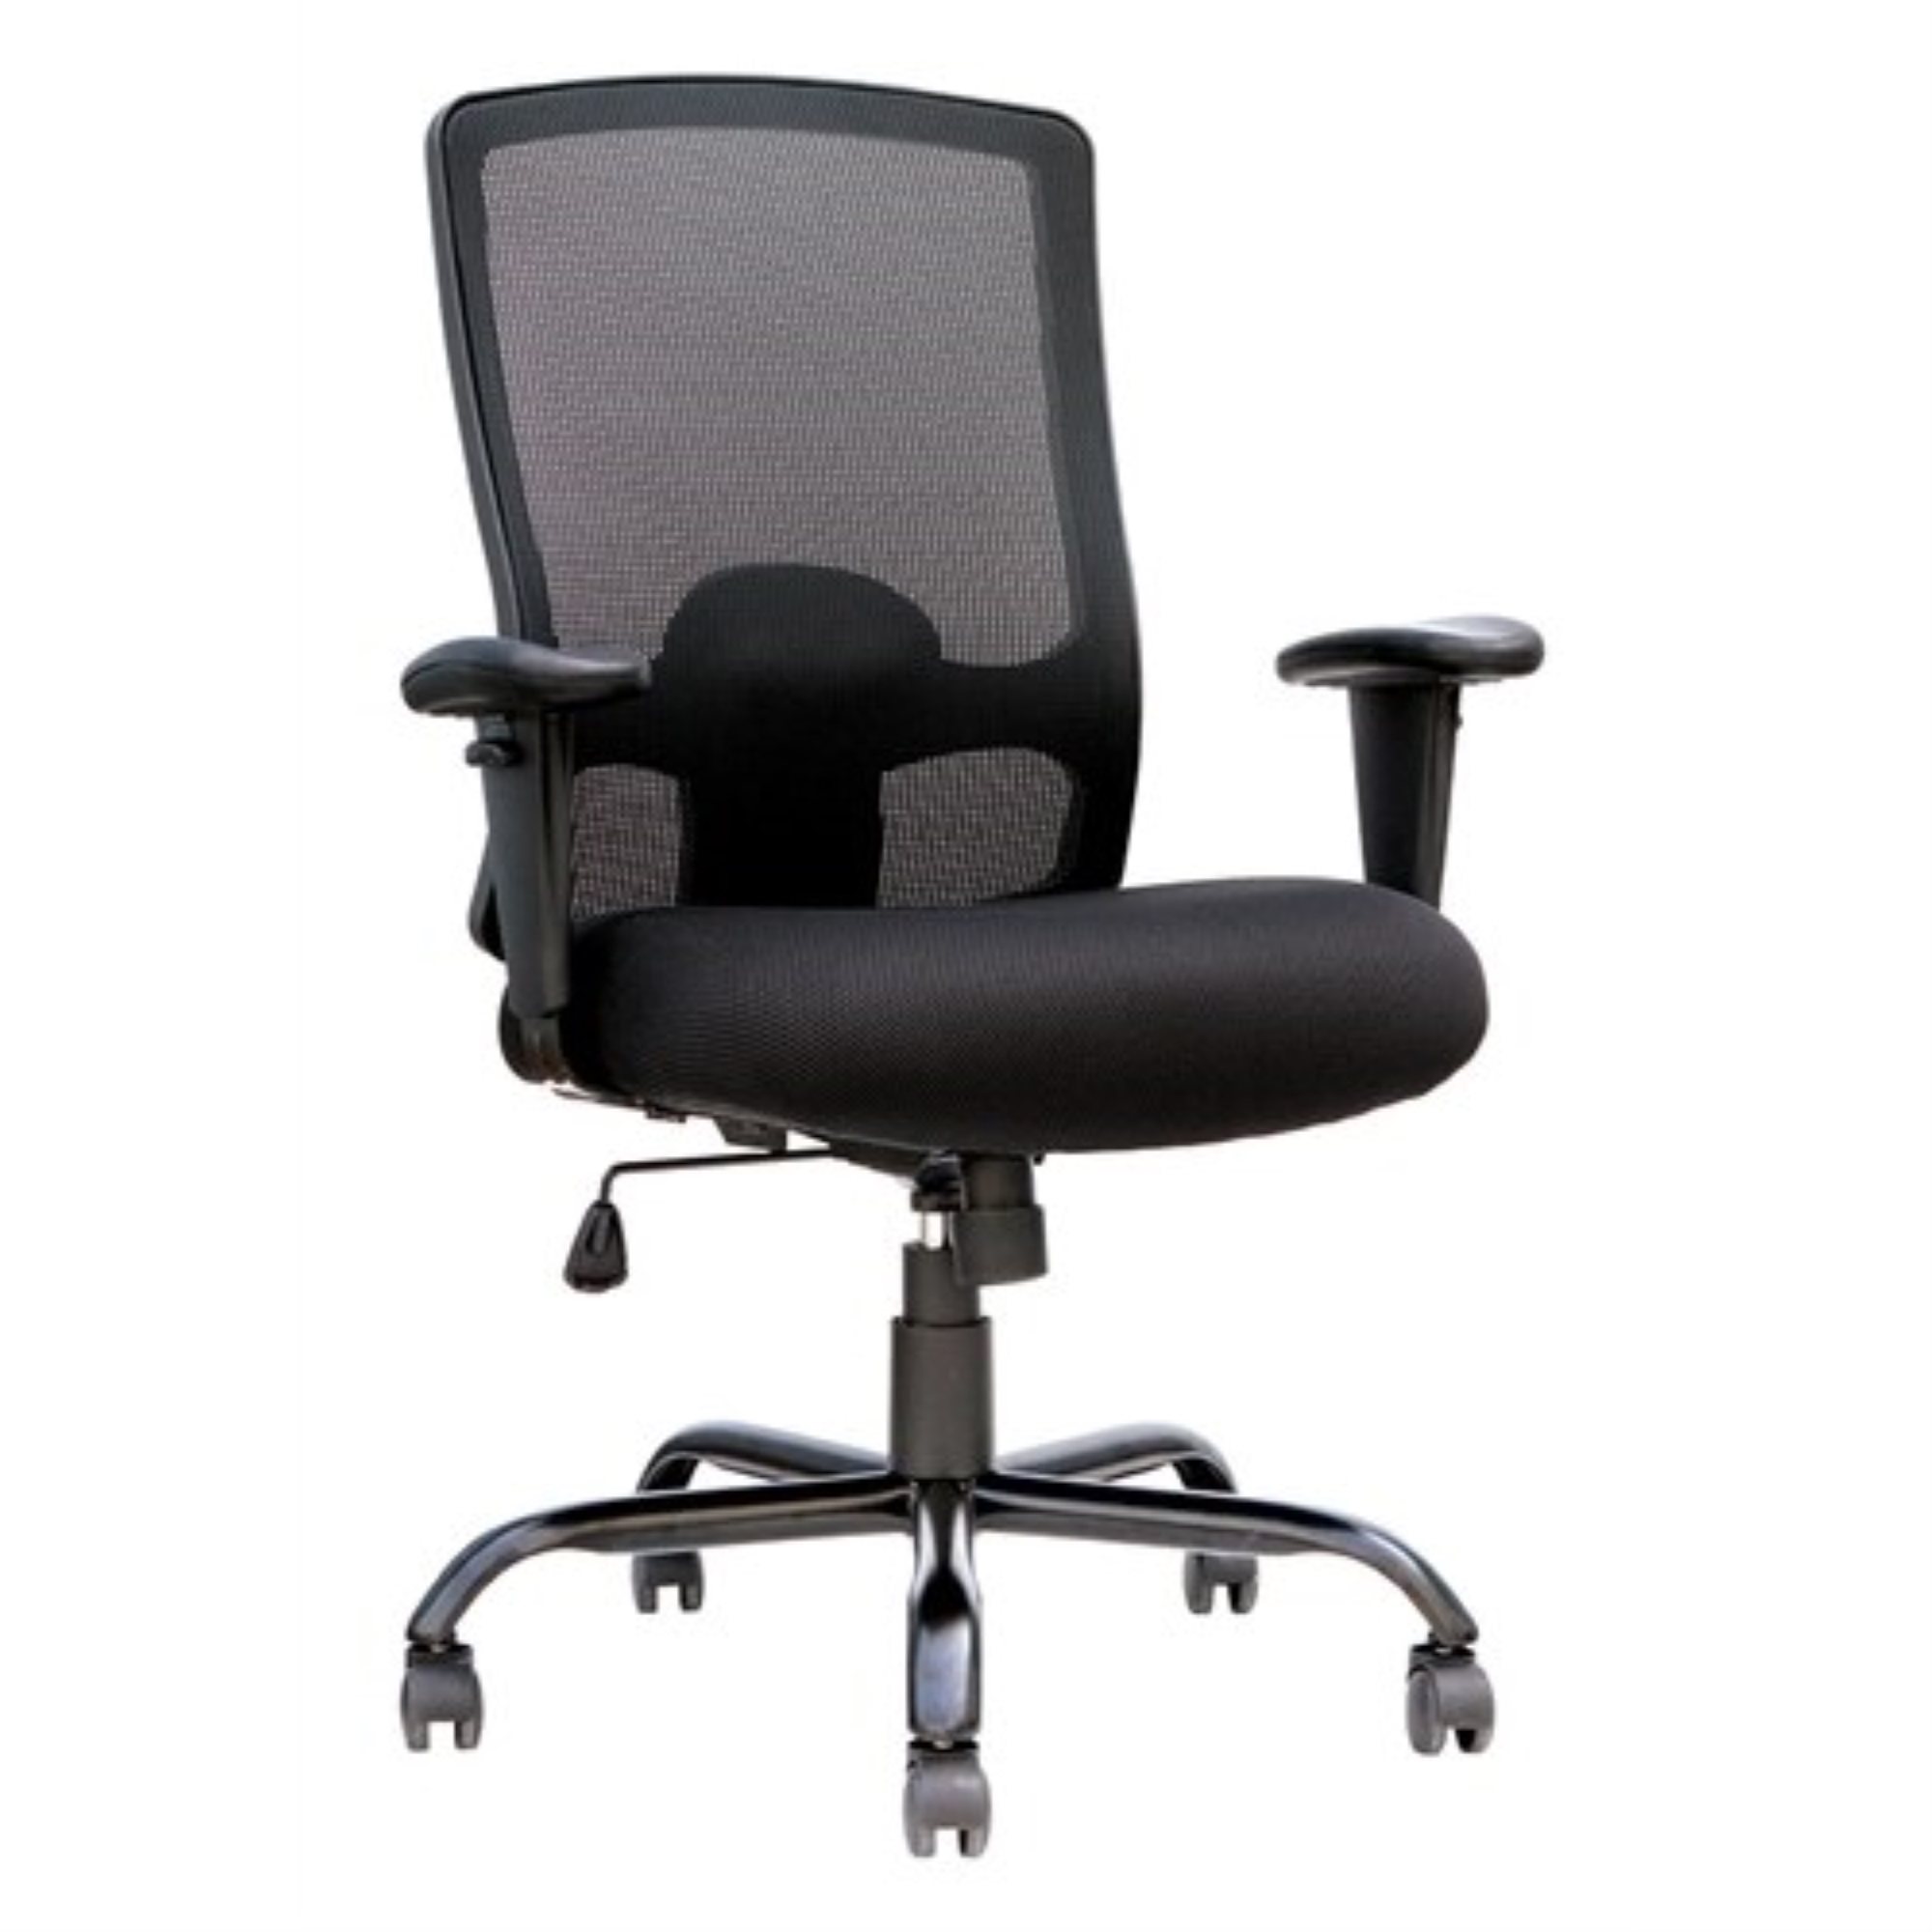 29" x 26.4" x 41" Black Mesh Fabric Chair